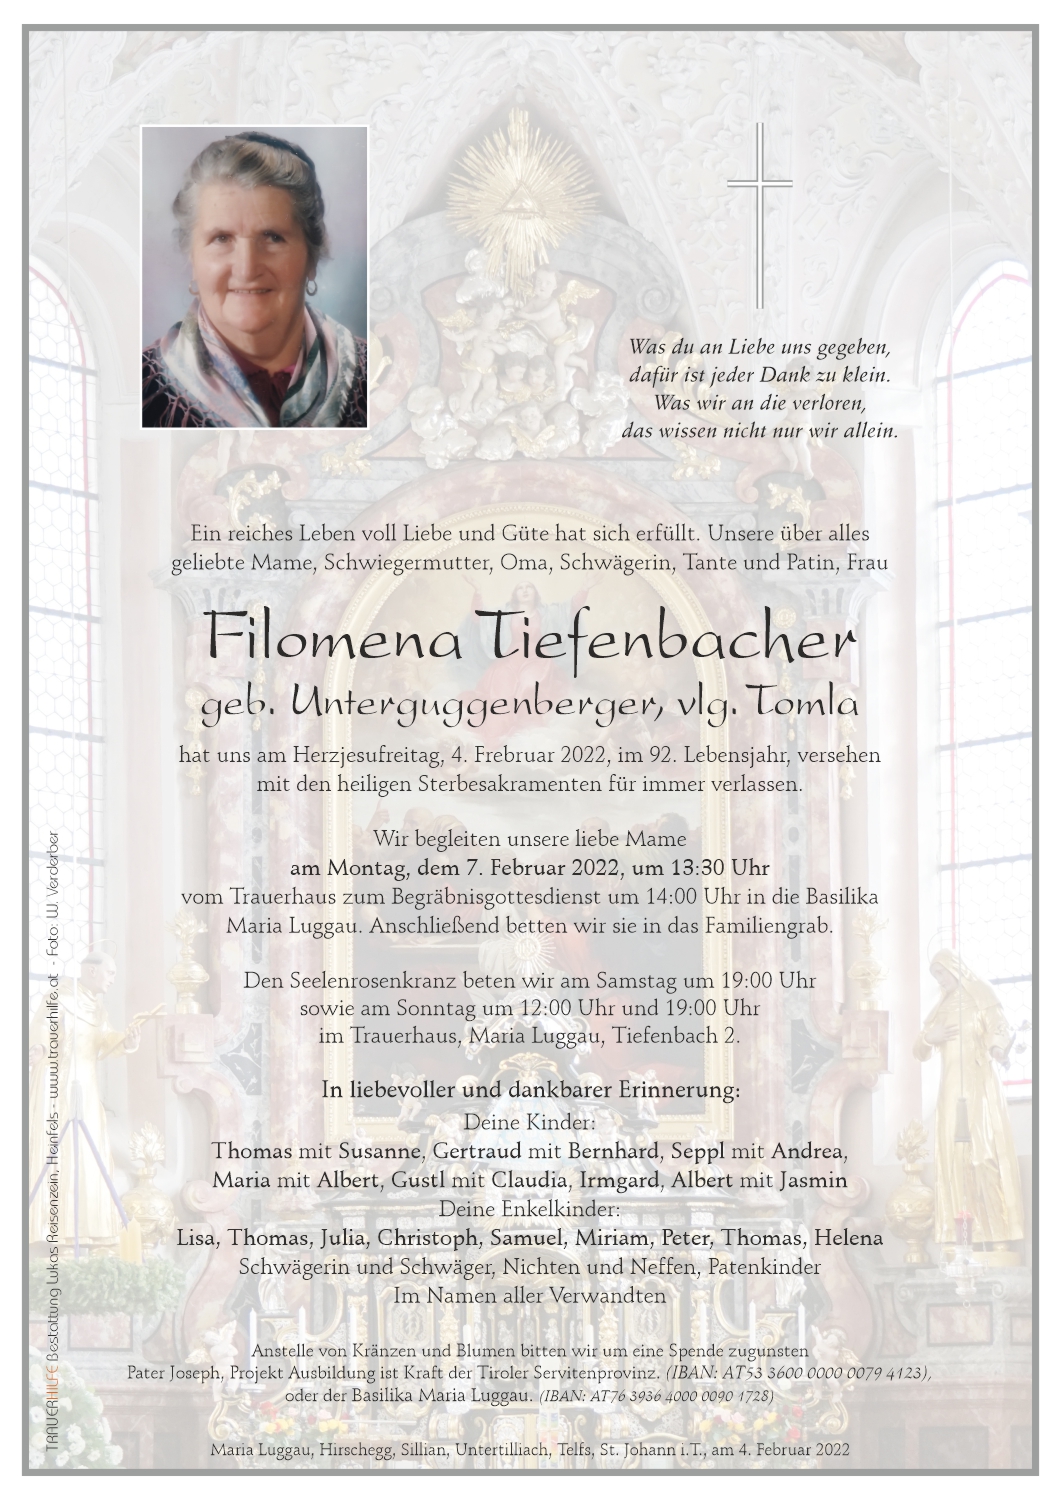 Filomena Tiefenbacher